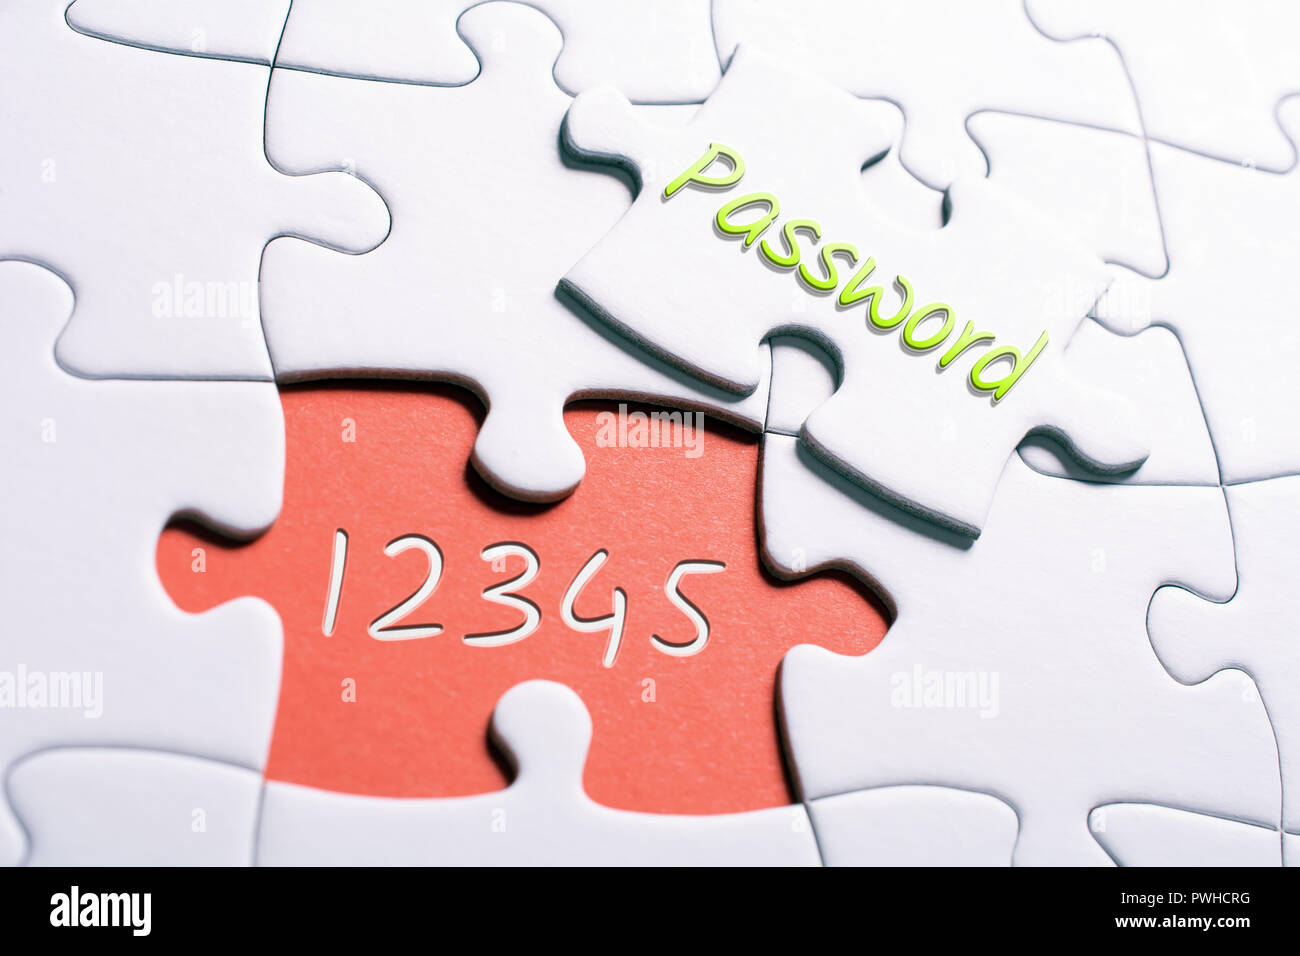 La parola password e i numeri 12345 In Missing Piece Jigsaw Puzzle - Password non sicura Concept Foto Stock